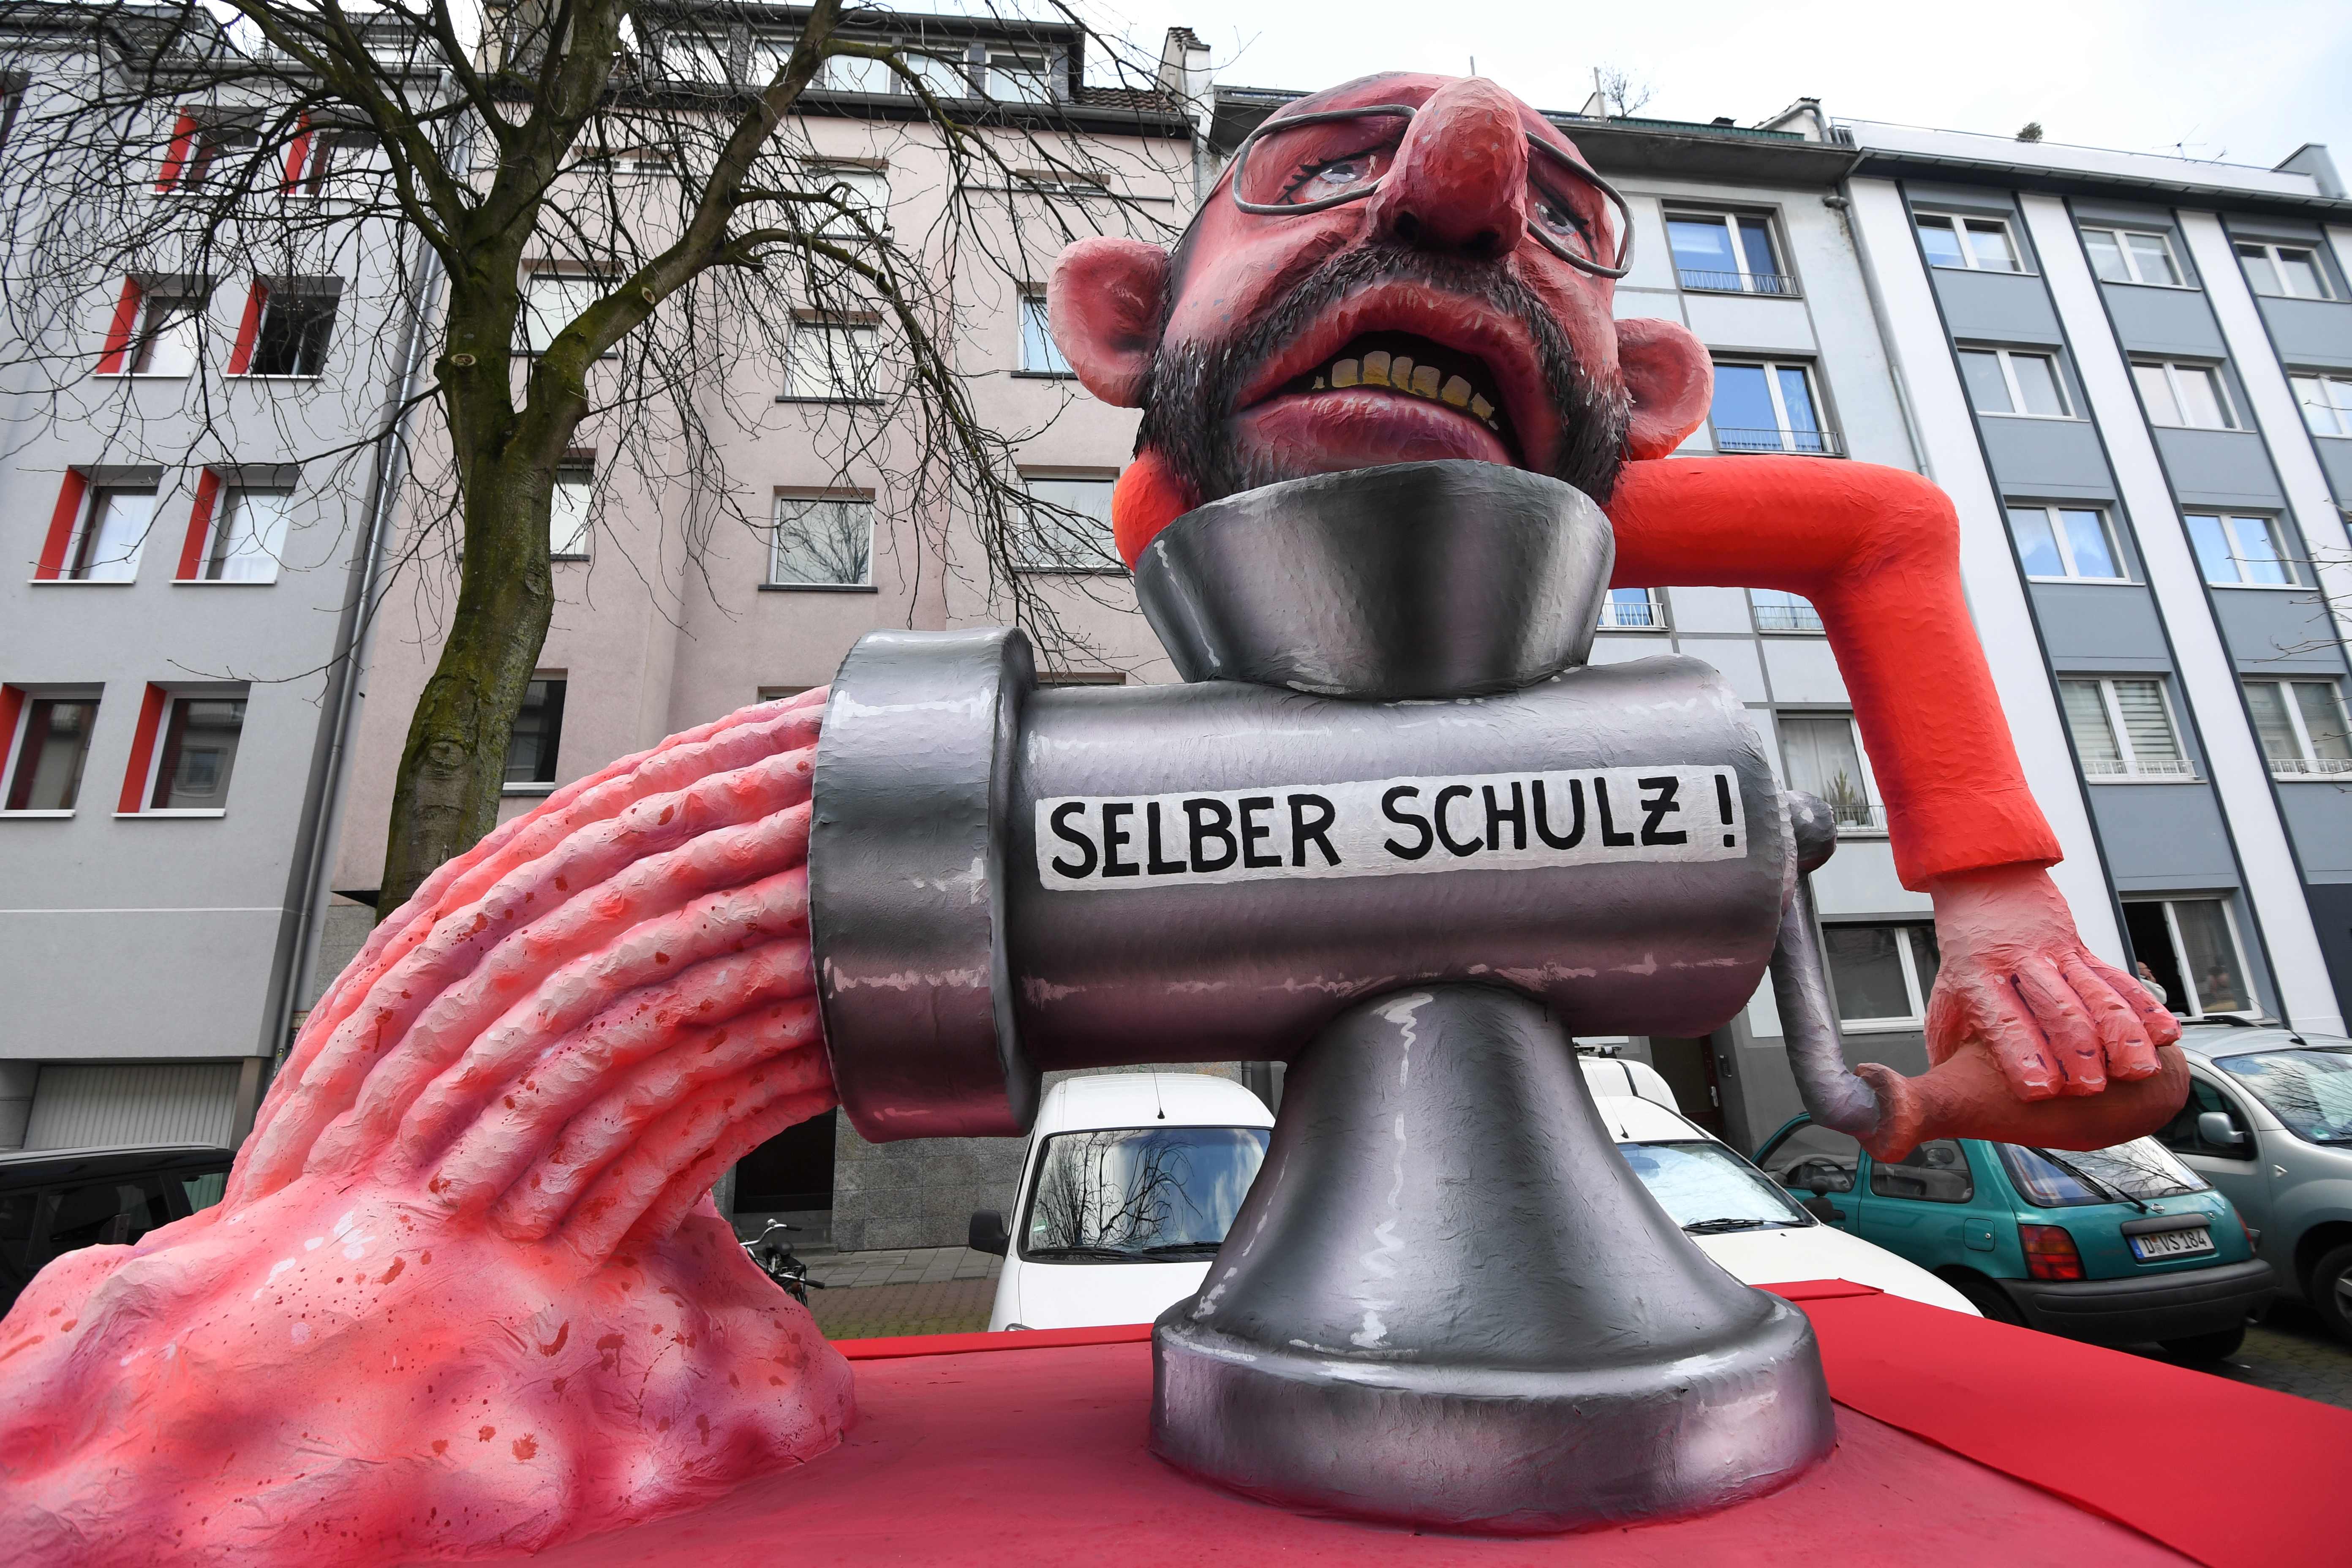 الألمان يسخرون من زعيم الحزب الديمقراطي الاشتراكي الألماني مارتن شولز